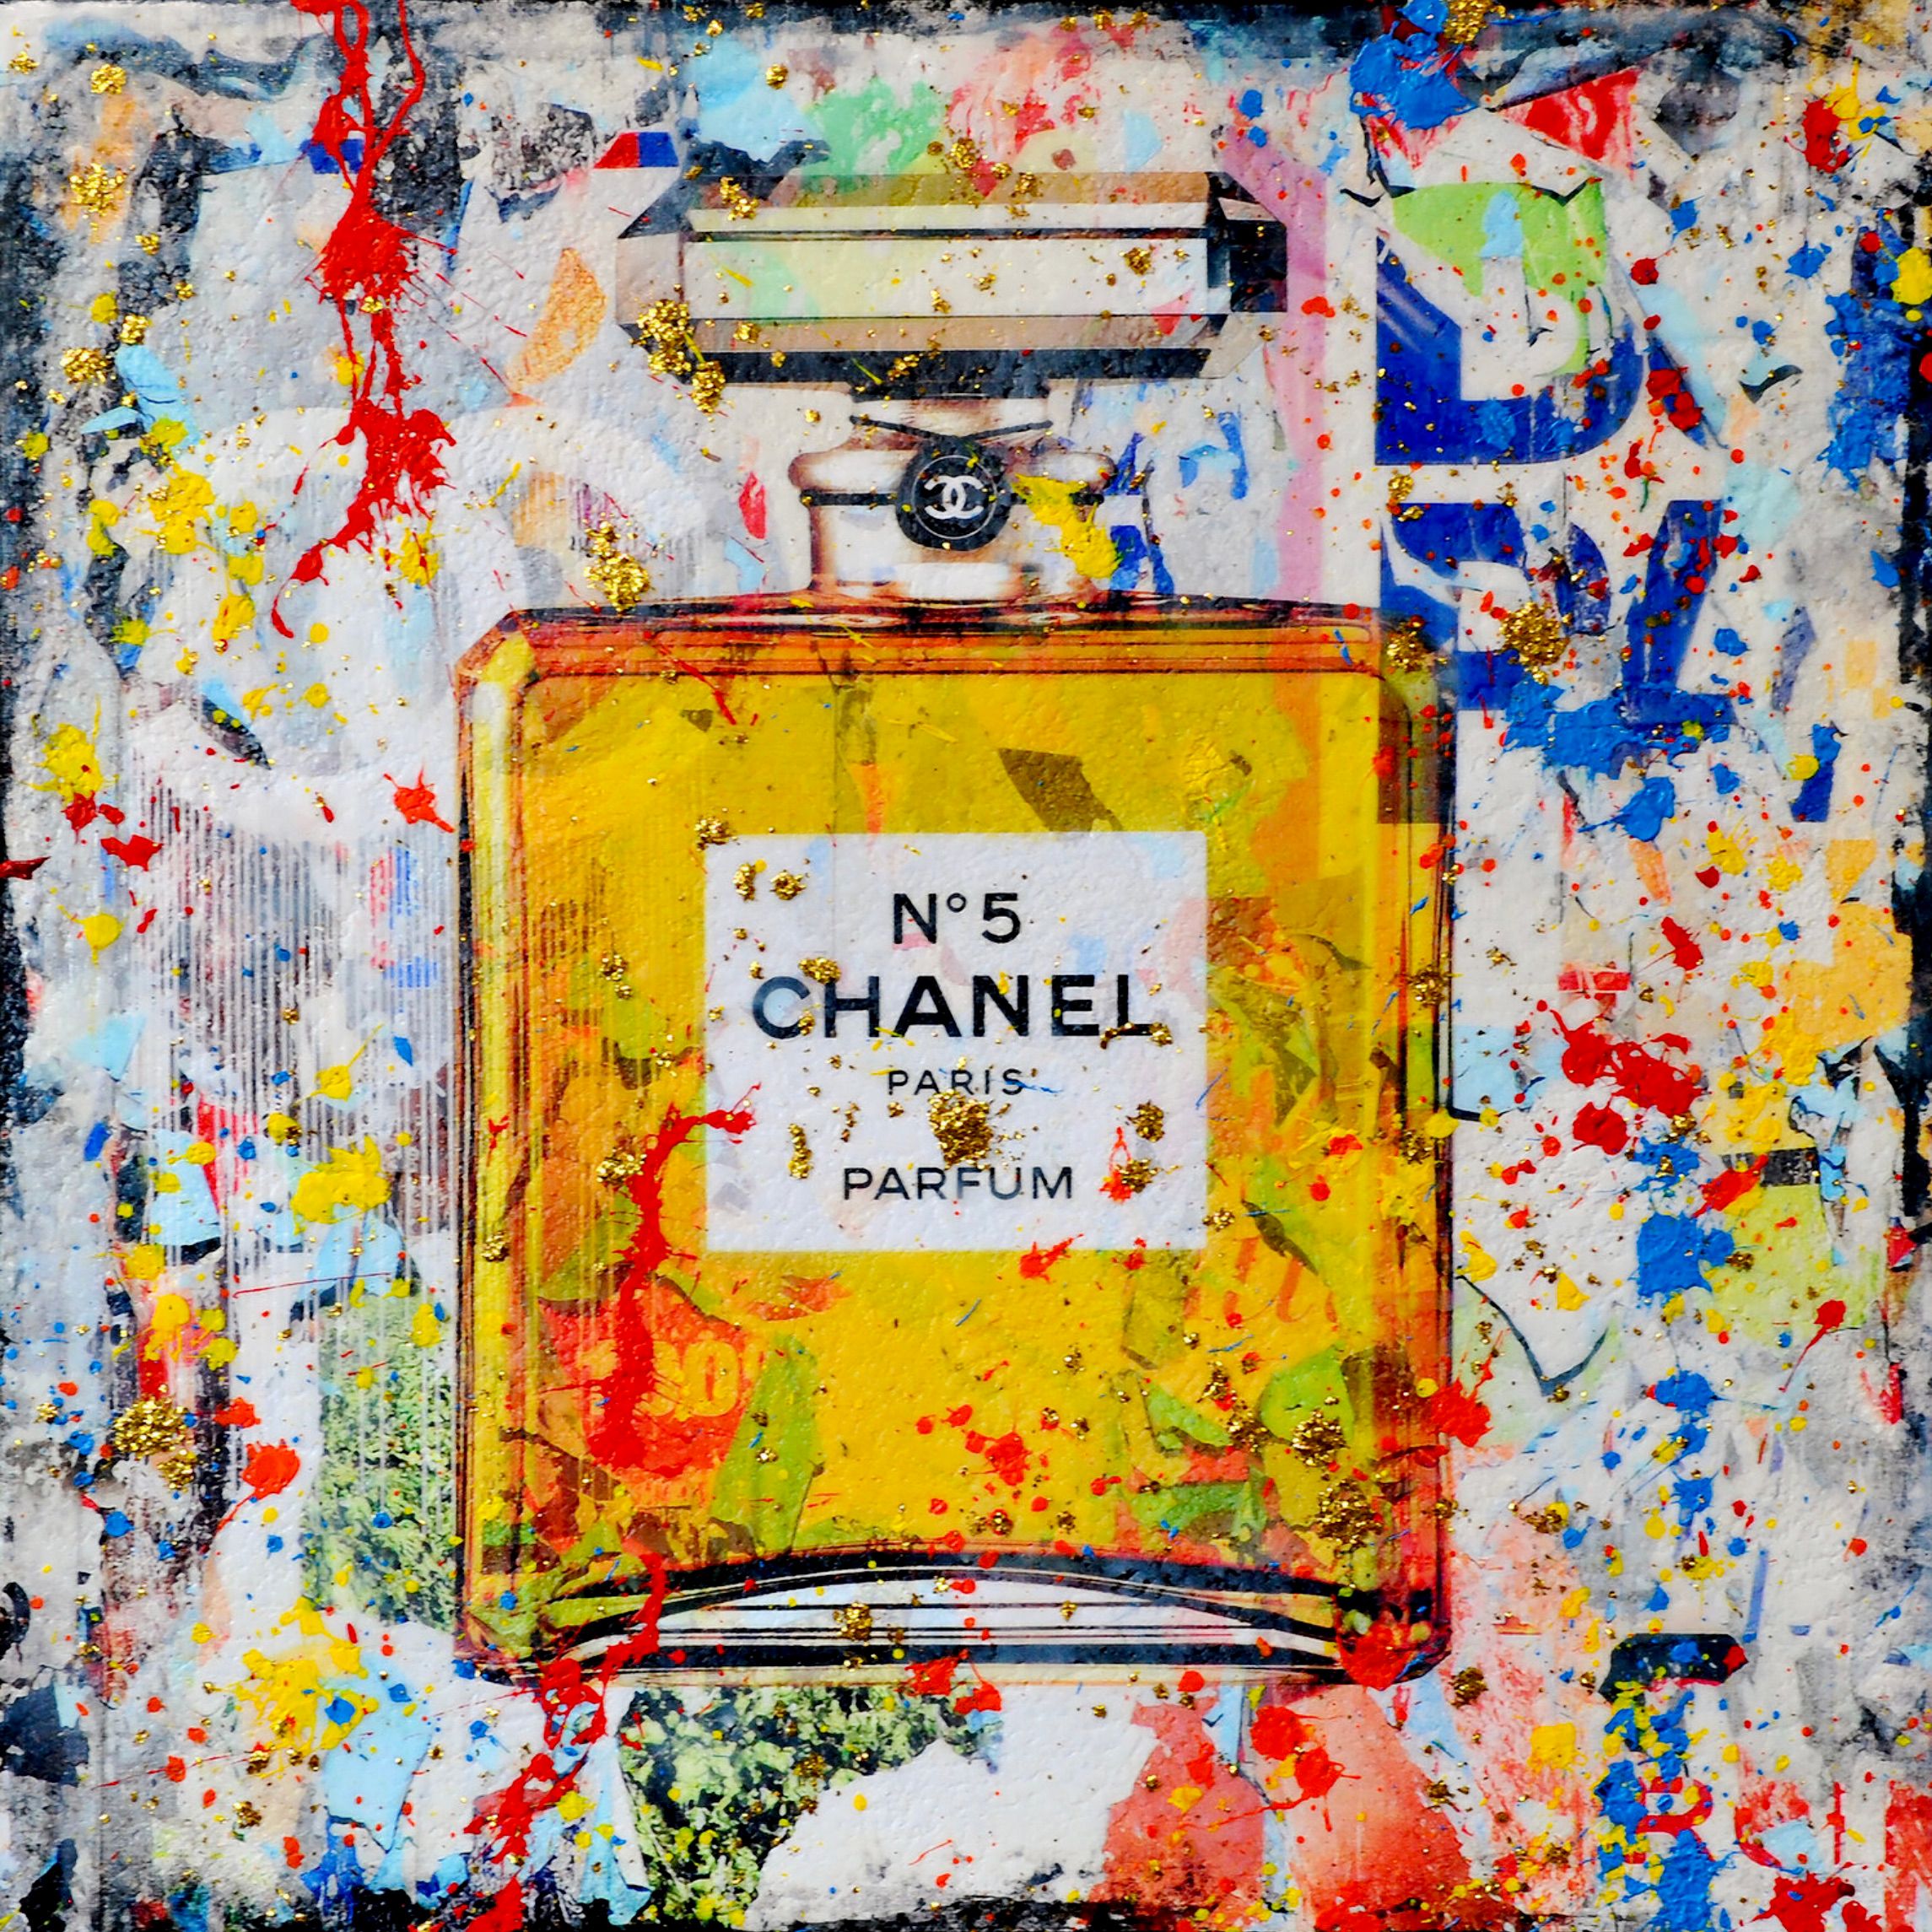 Chanel No.5" de Karin Vermeer es una combinación y procesamiento digital de fotografías, pinturas y collages en nuevas obras de arte pop en color.